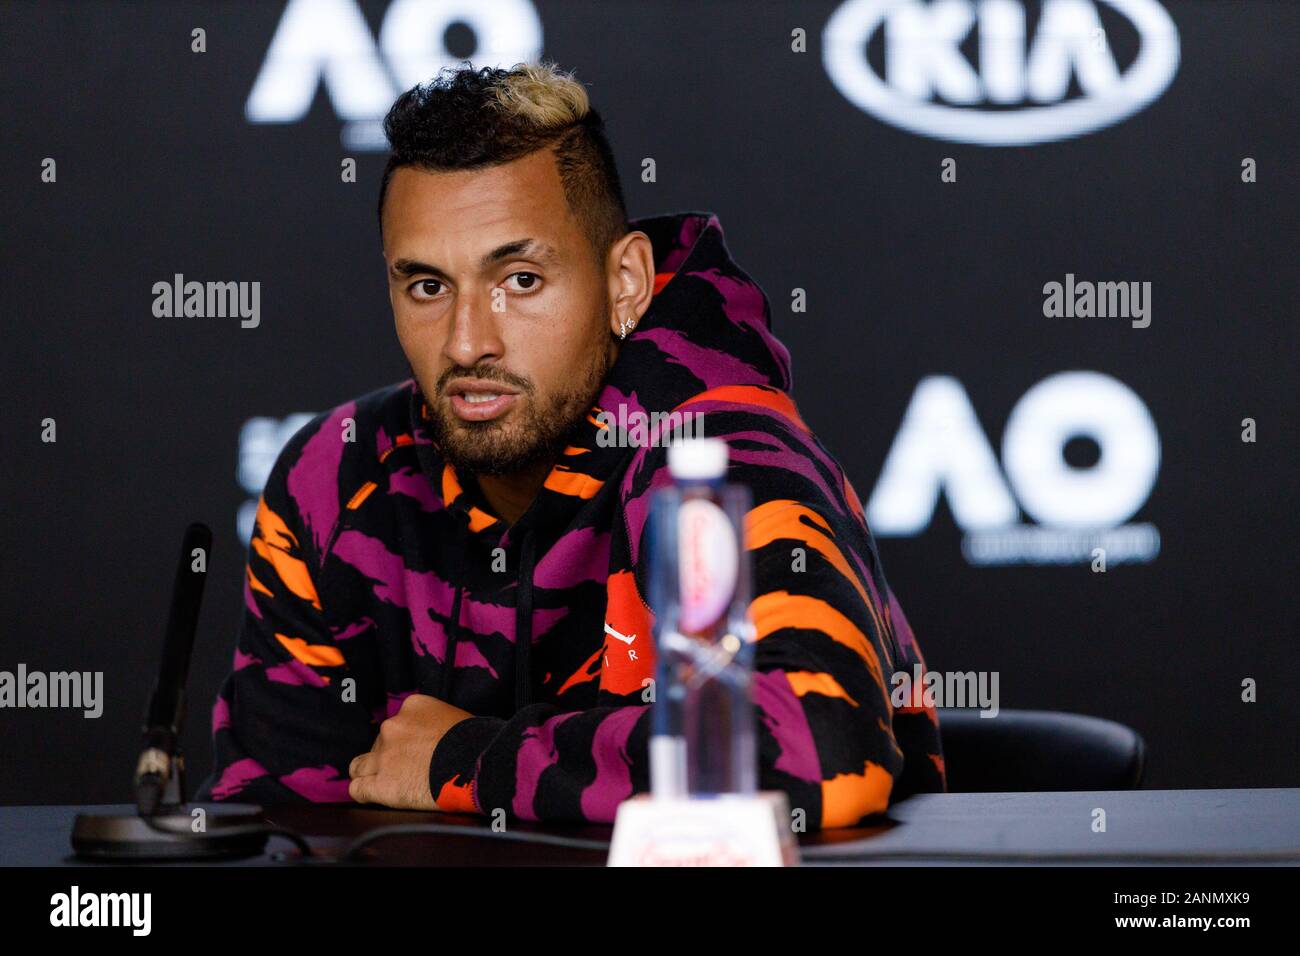 Nick KYRGIOS (aus) während einer Pressekonferenz bei den Australian Open 2020 Stockfoto